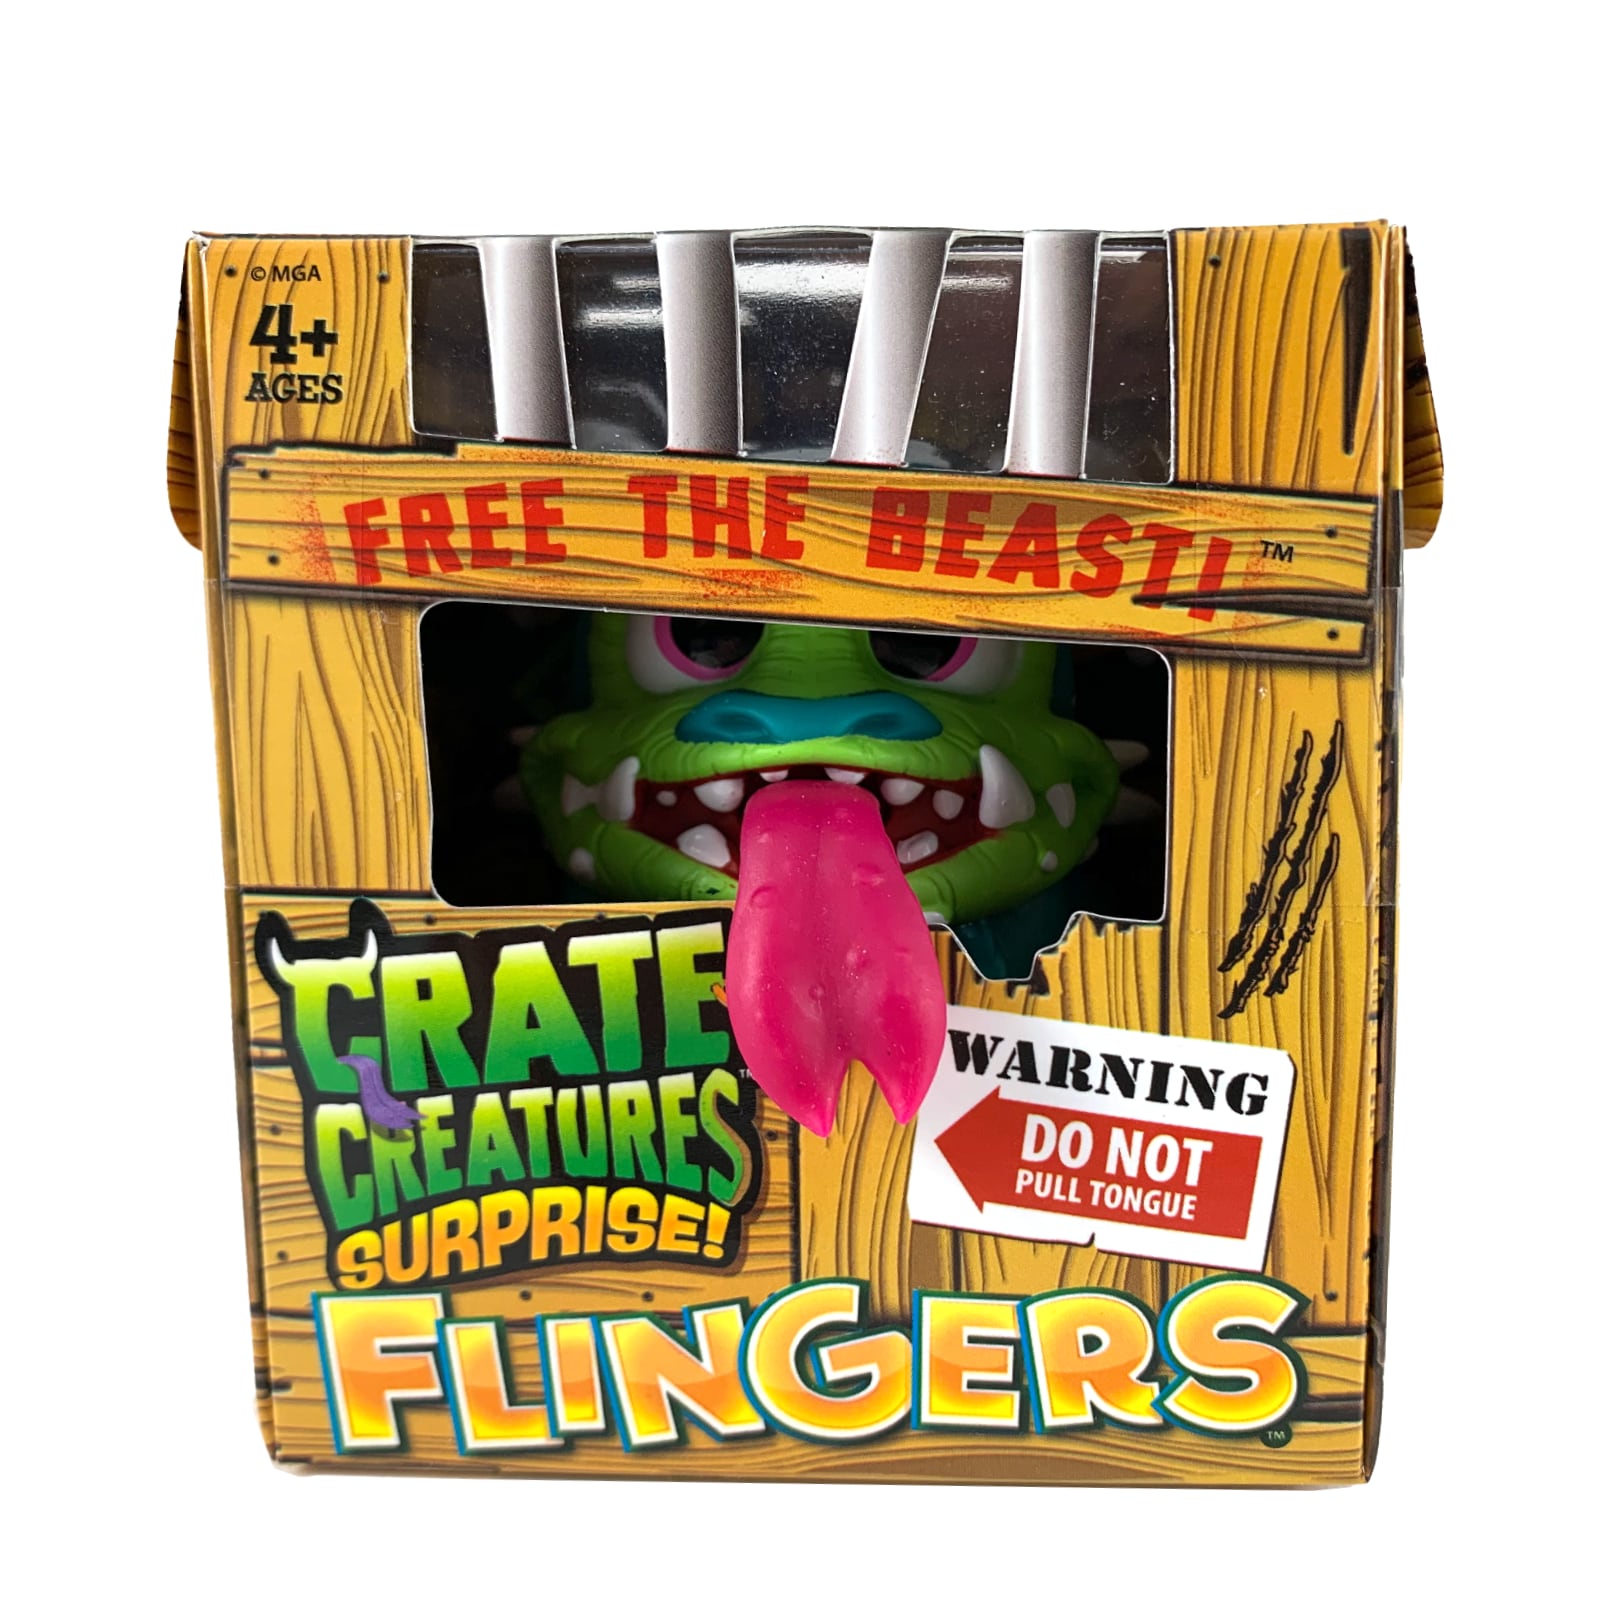 Crate Creatures Surprise Flingers Entfessle das Biest